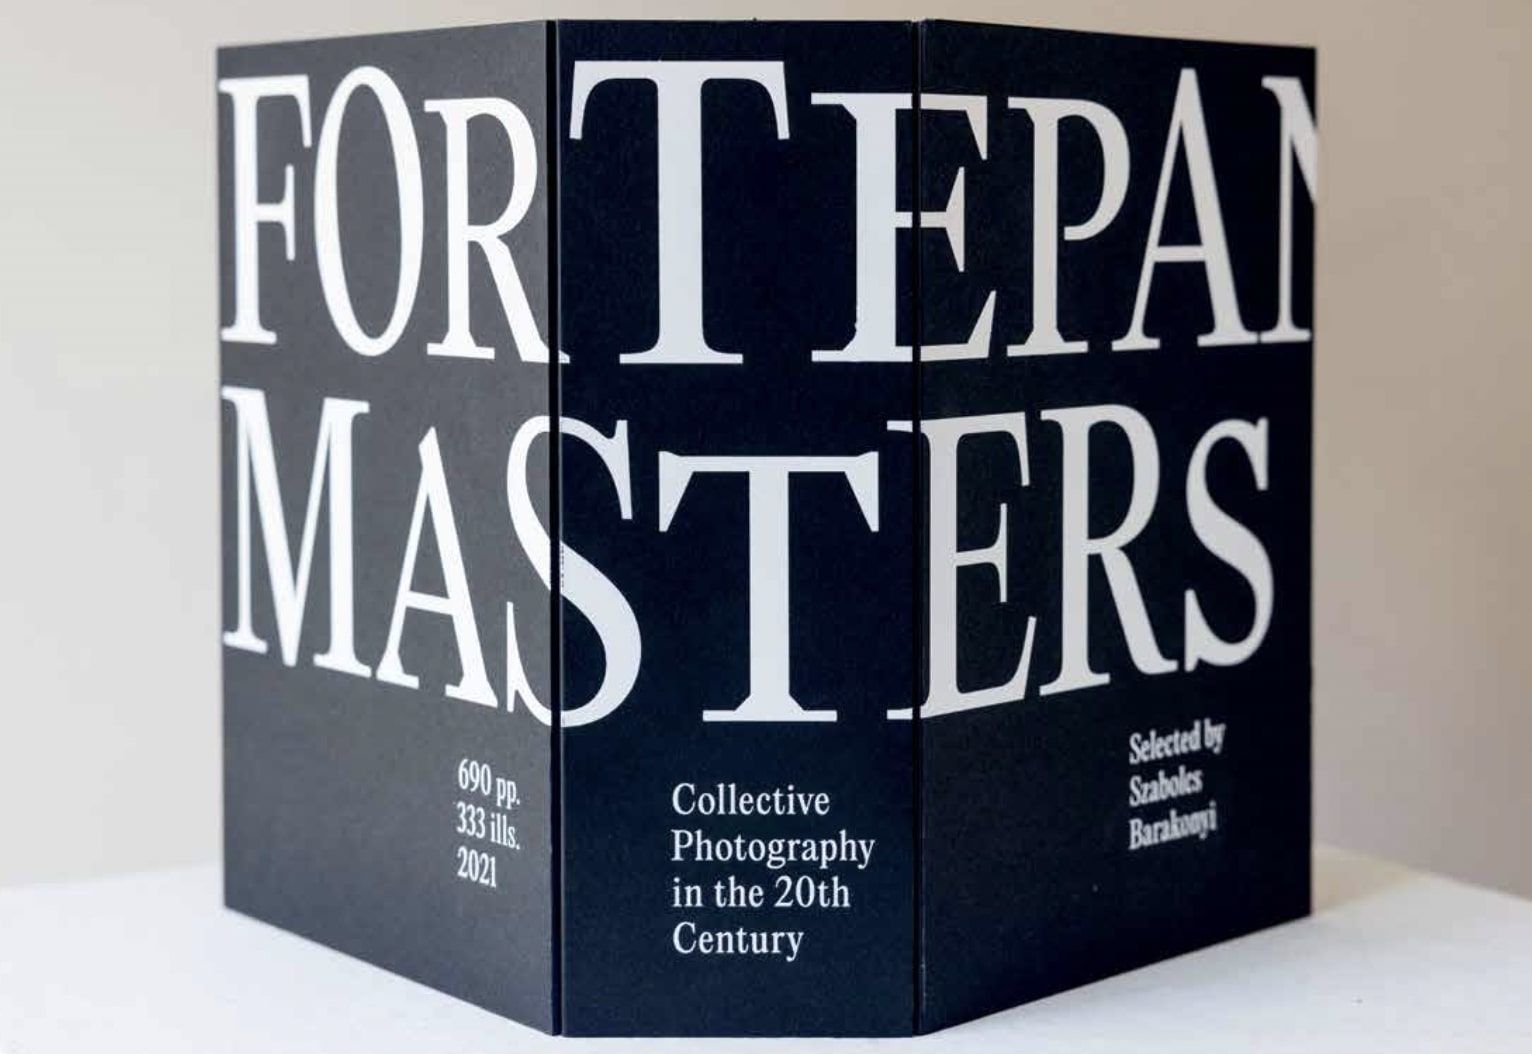 A Fortepan Masters. Kollektív fotográfia a 20. században. Barakonyi Szabolcs válogatásában keménytáblás borítója, fotó: © Barakonyi Szabolcs